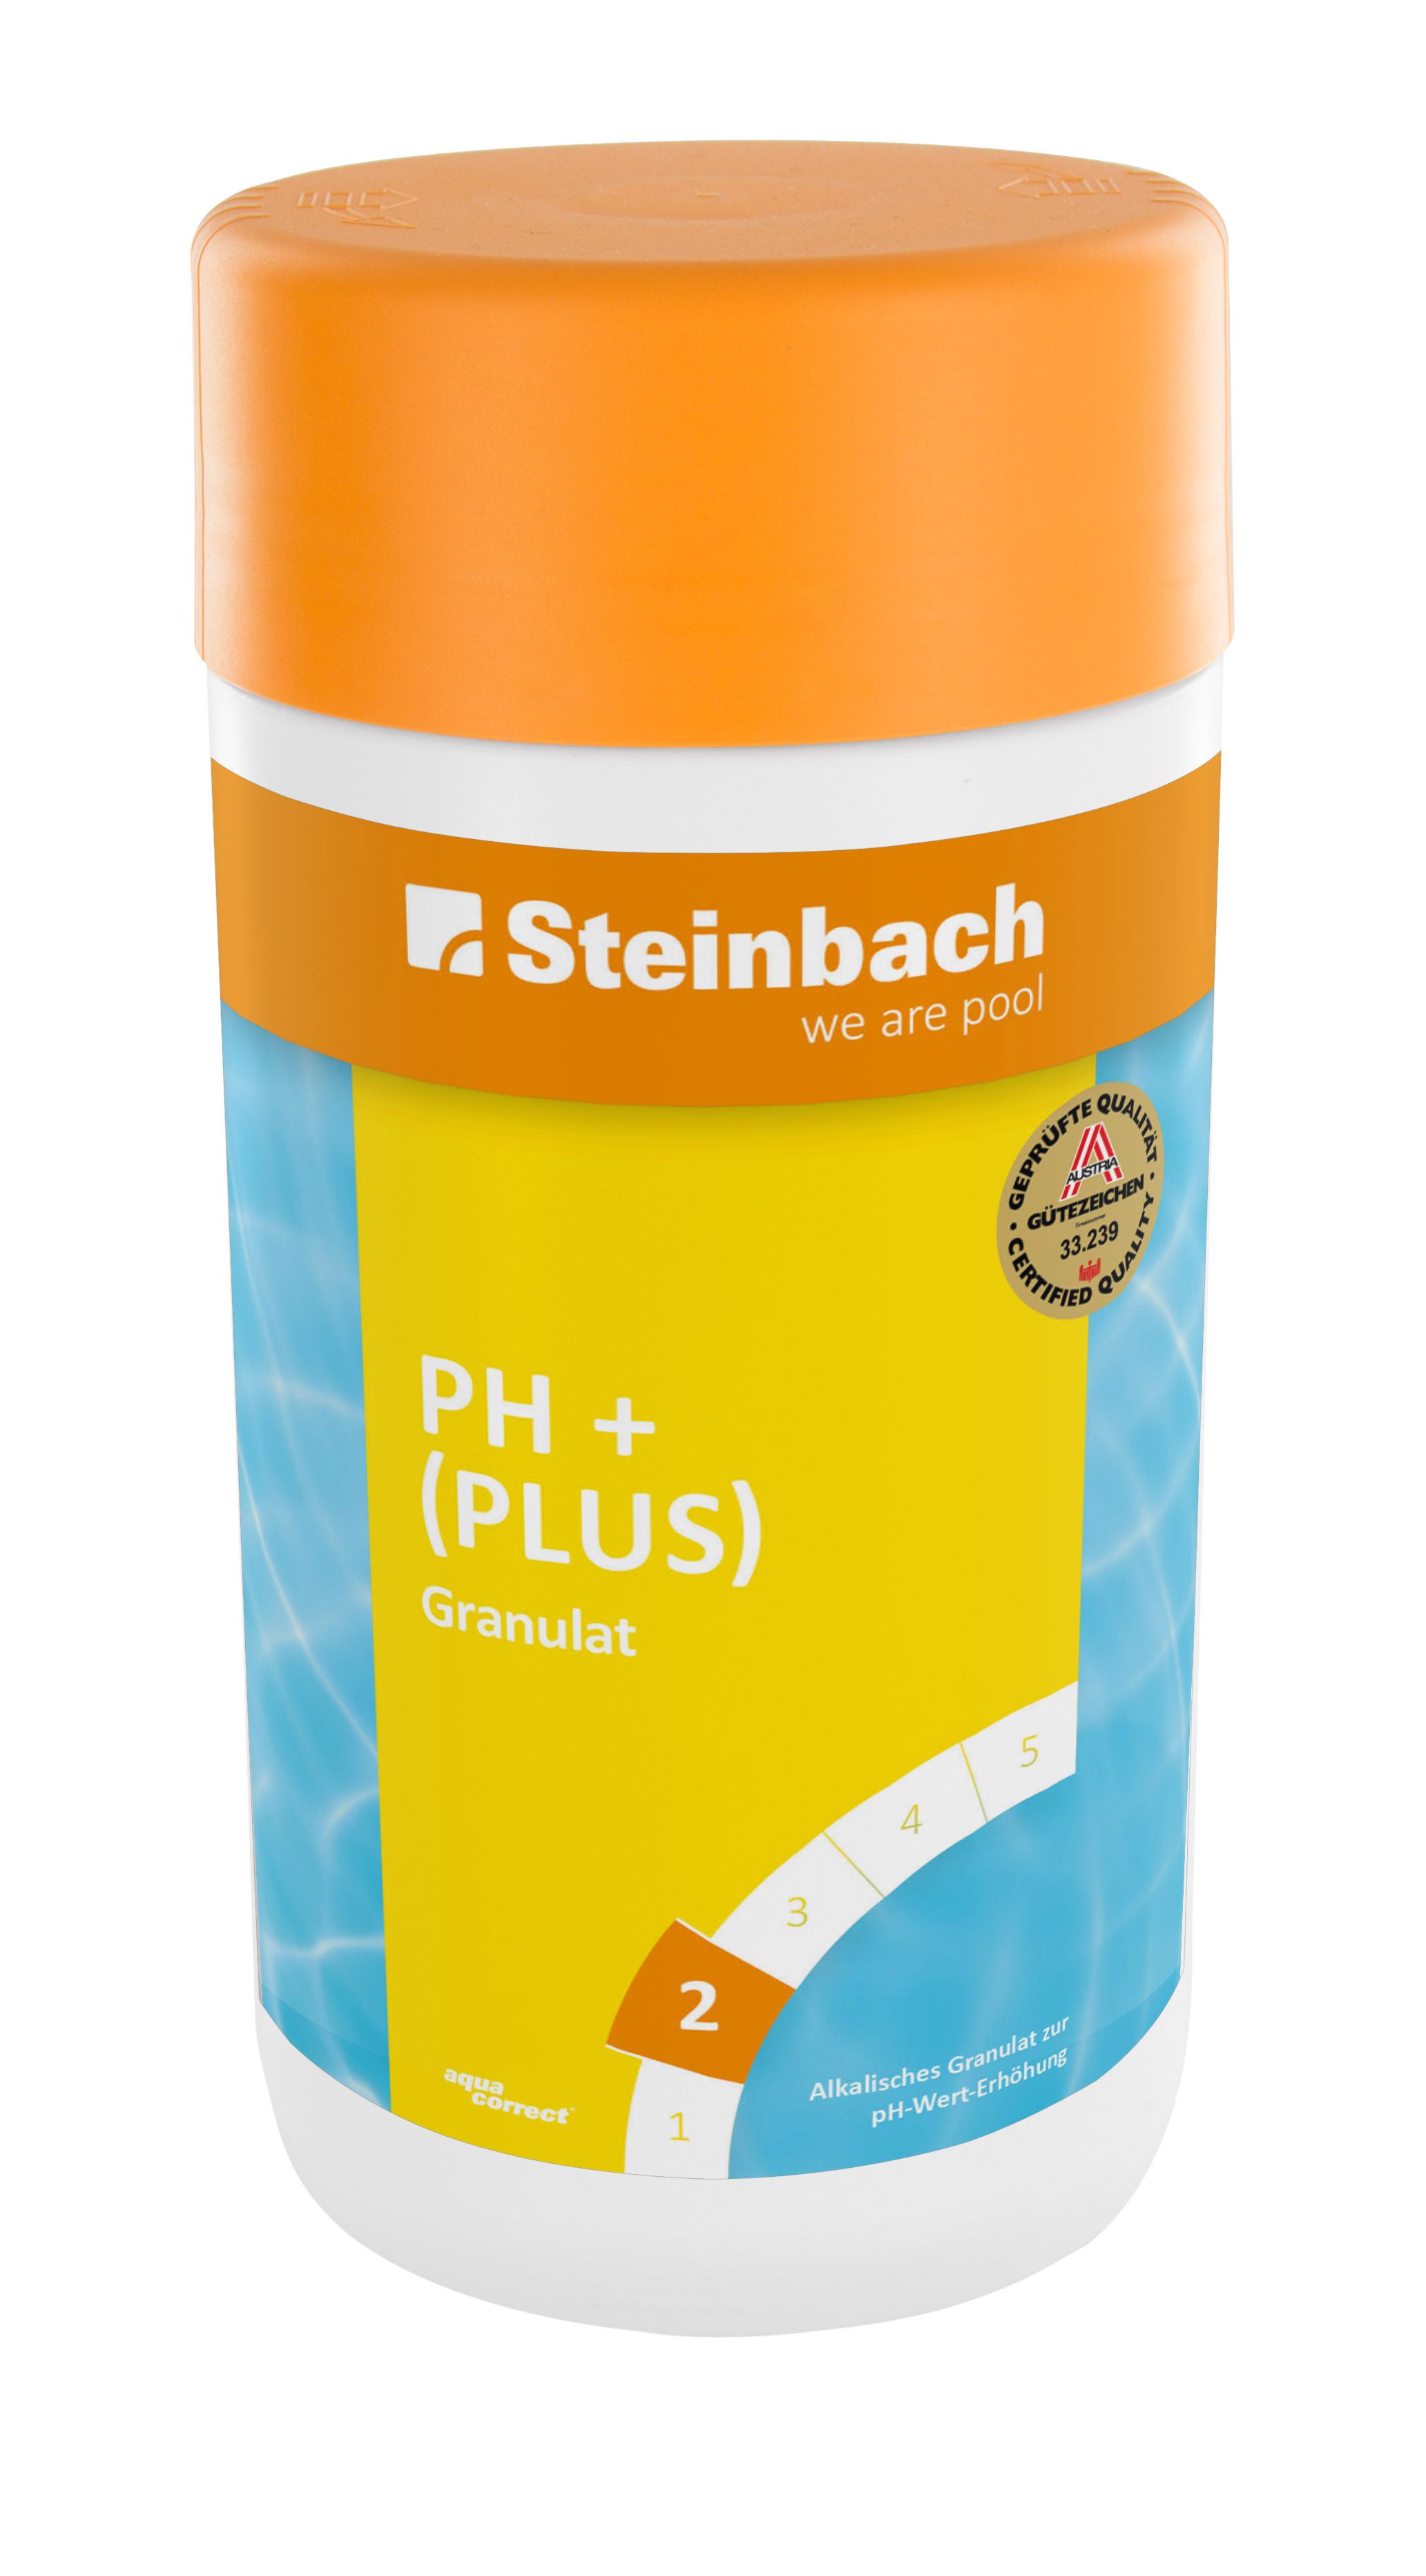 Steinbach Pool Poolpflege pH-Plus Granulat zur Regulierung des pH-Wertes in Pools